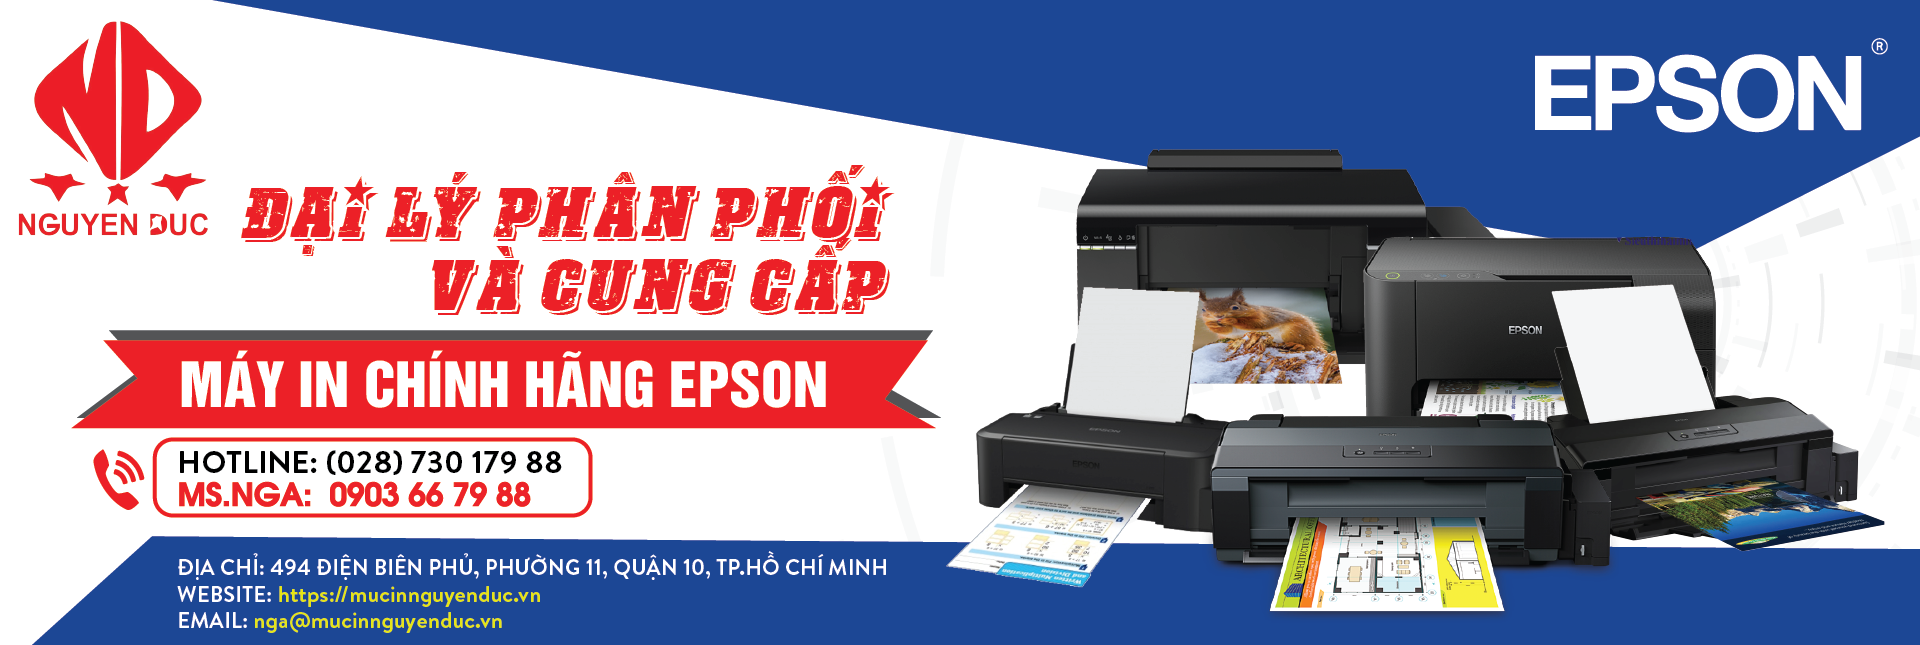 Đại lý phân phối máy quét tài liệu di động Epson WorkForce DS-310, giao hàng tại Bà Rịa - Vũng Tàu, Thành Phố Hồ Chí Minh